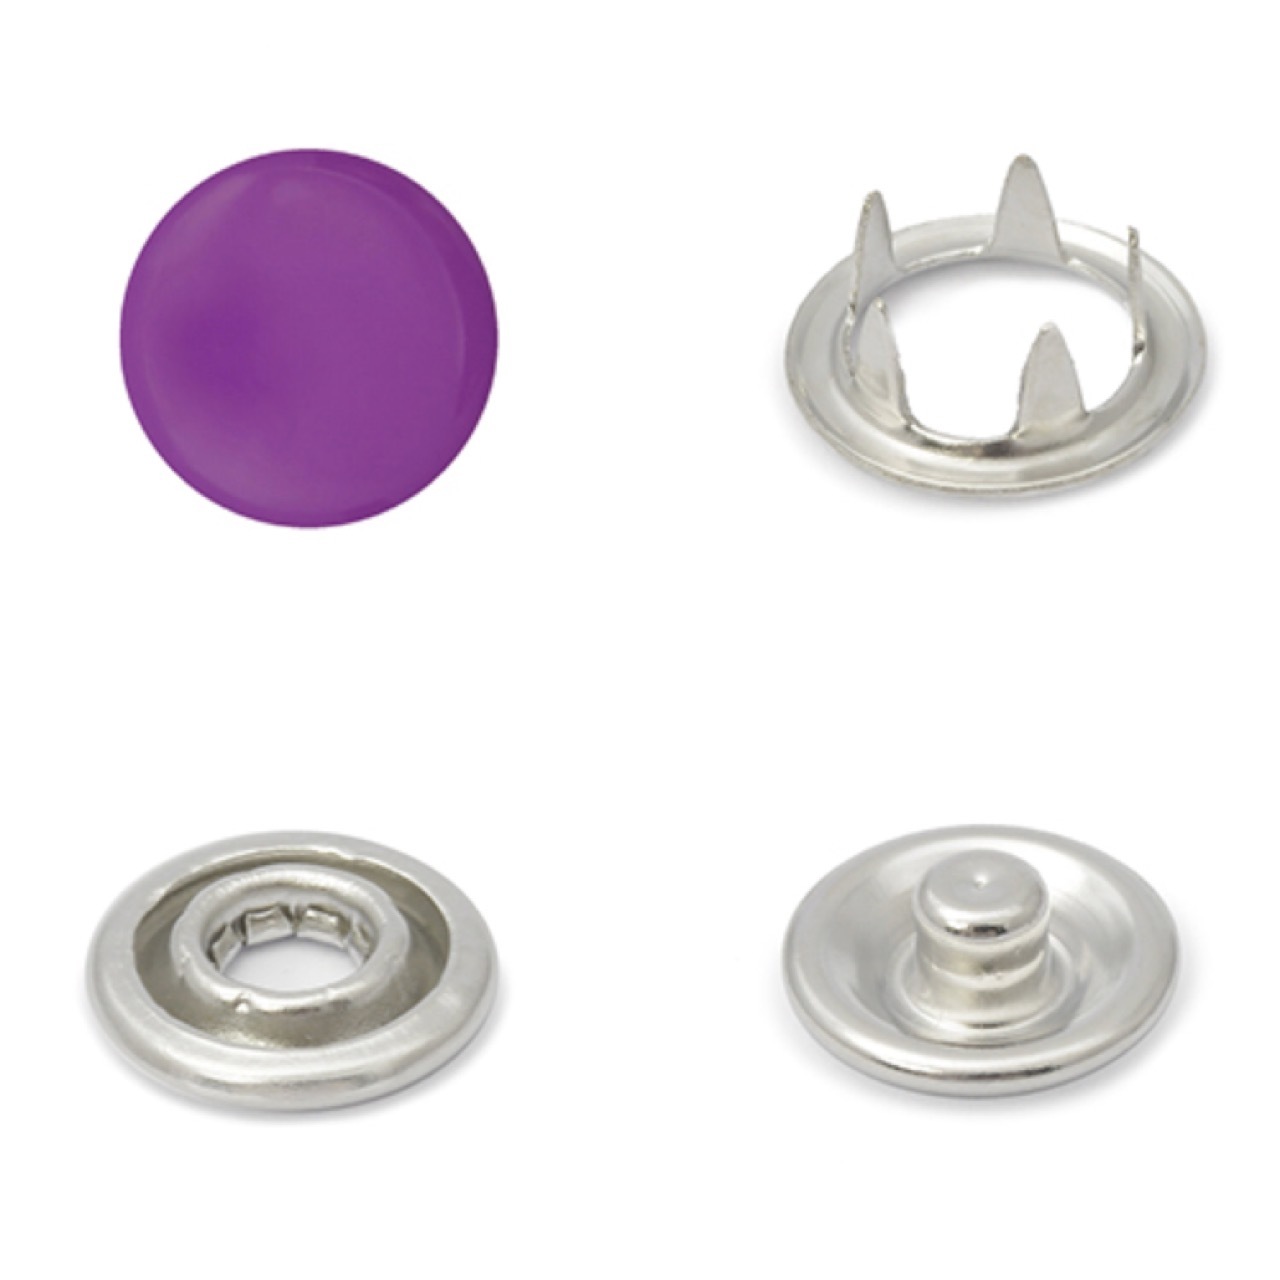 Кнопки рубашечные(трикотажные) с крышкой 9.5мм (уп.1440 шт) цвет: Фиолетовый